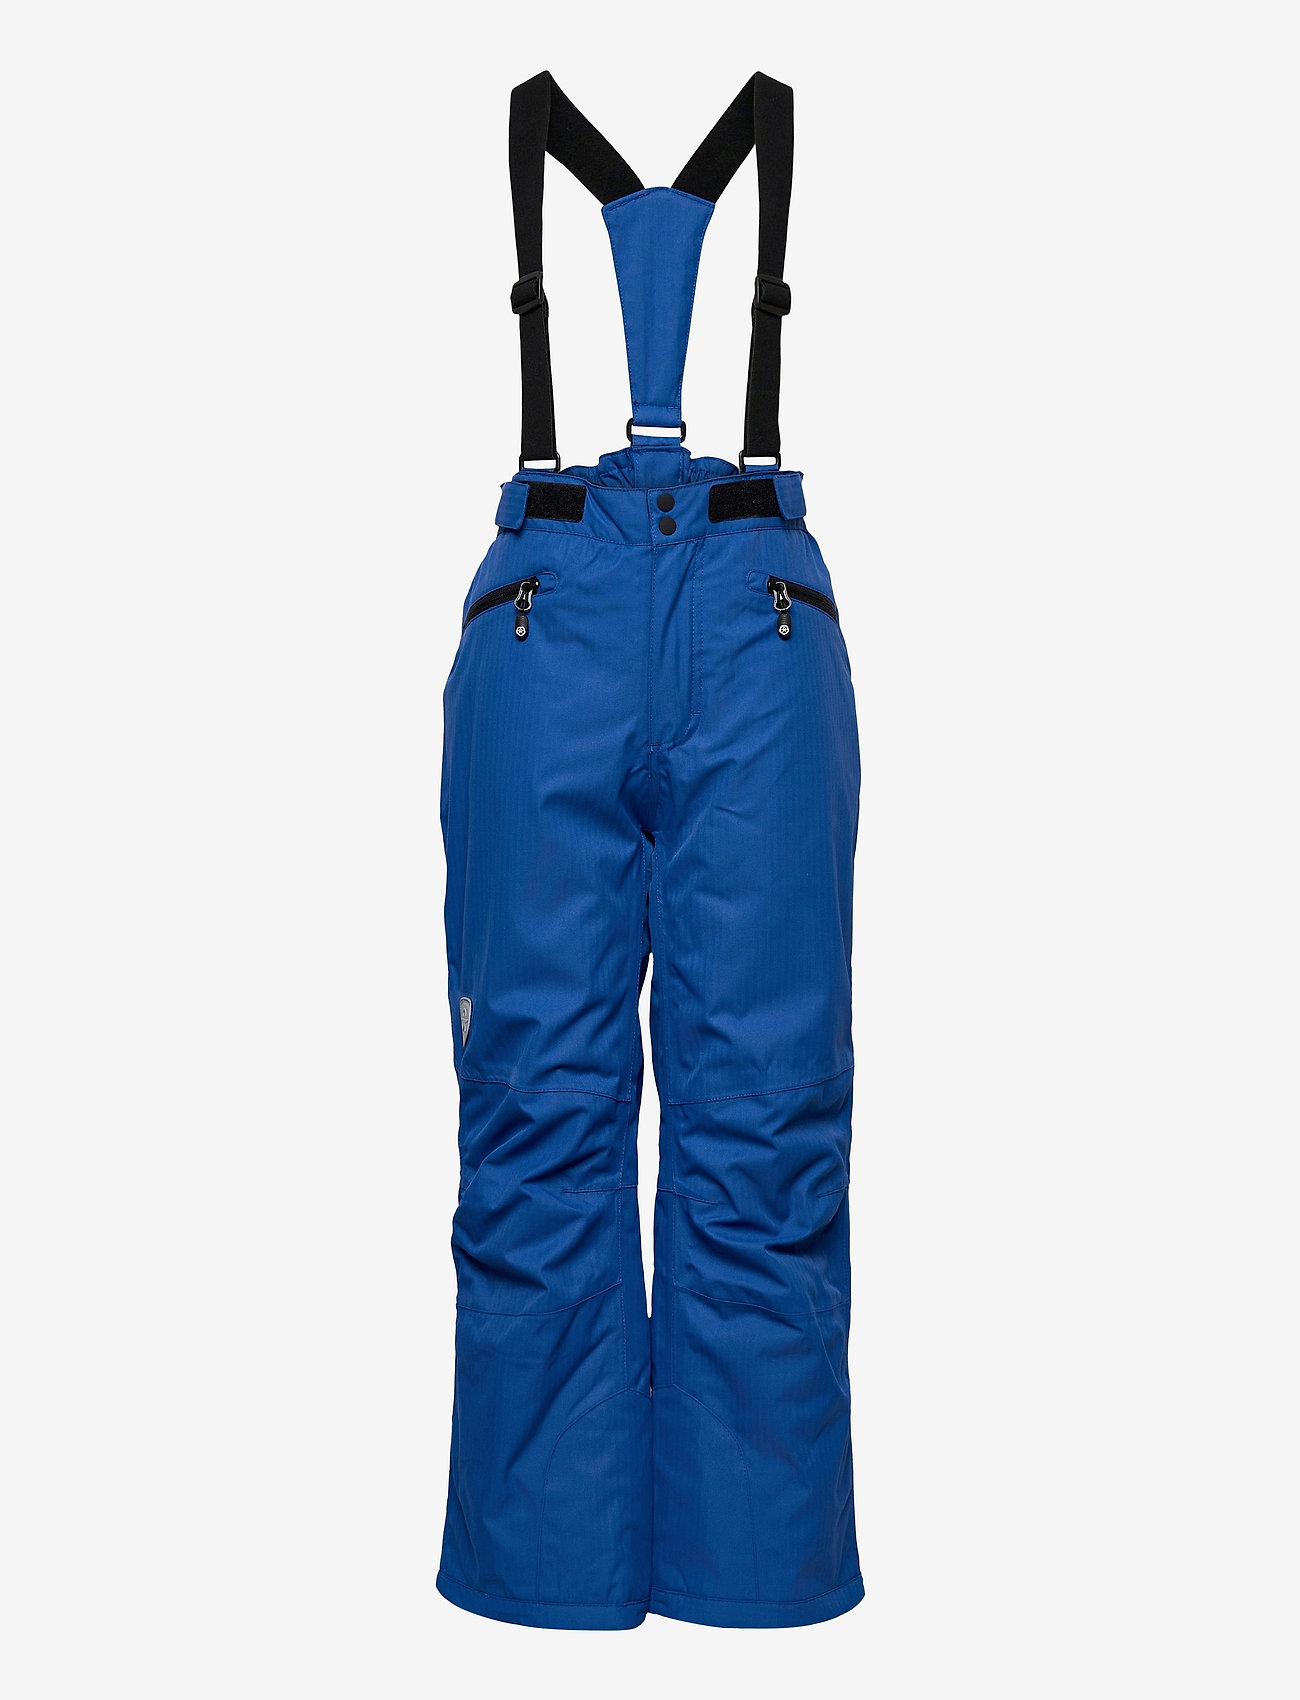 Color Kids - Ski pants w/Pockets, AF 10.000 - vinterbukser - galaxy blue - 0